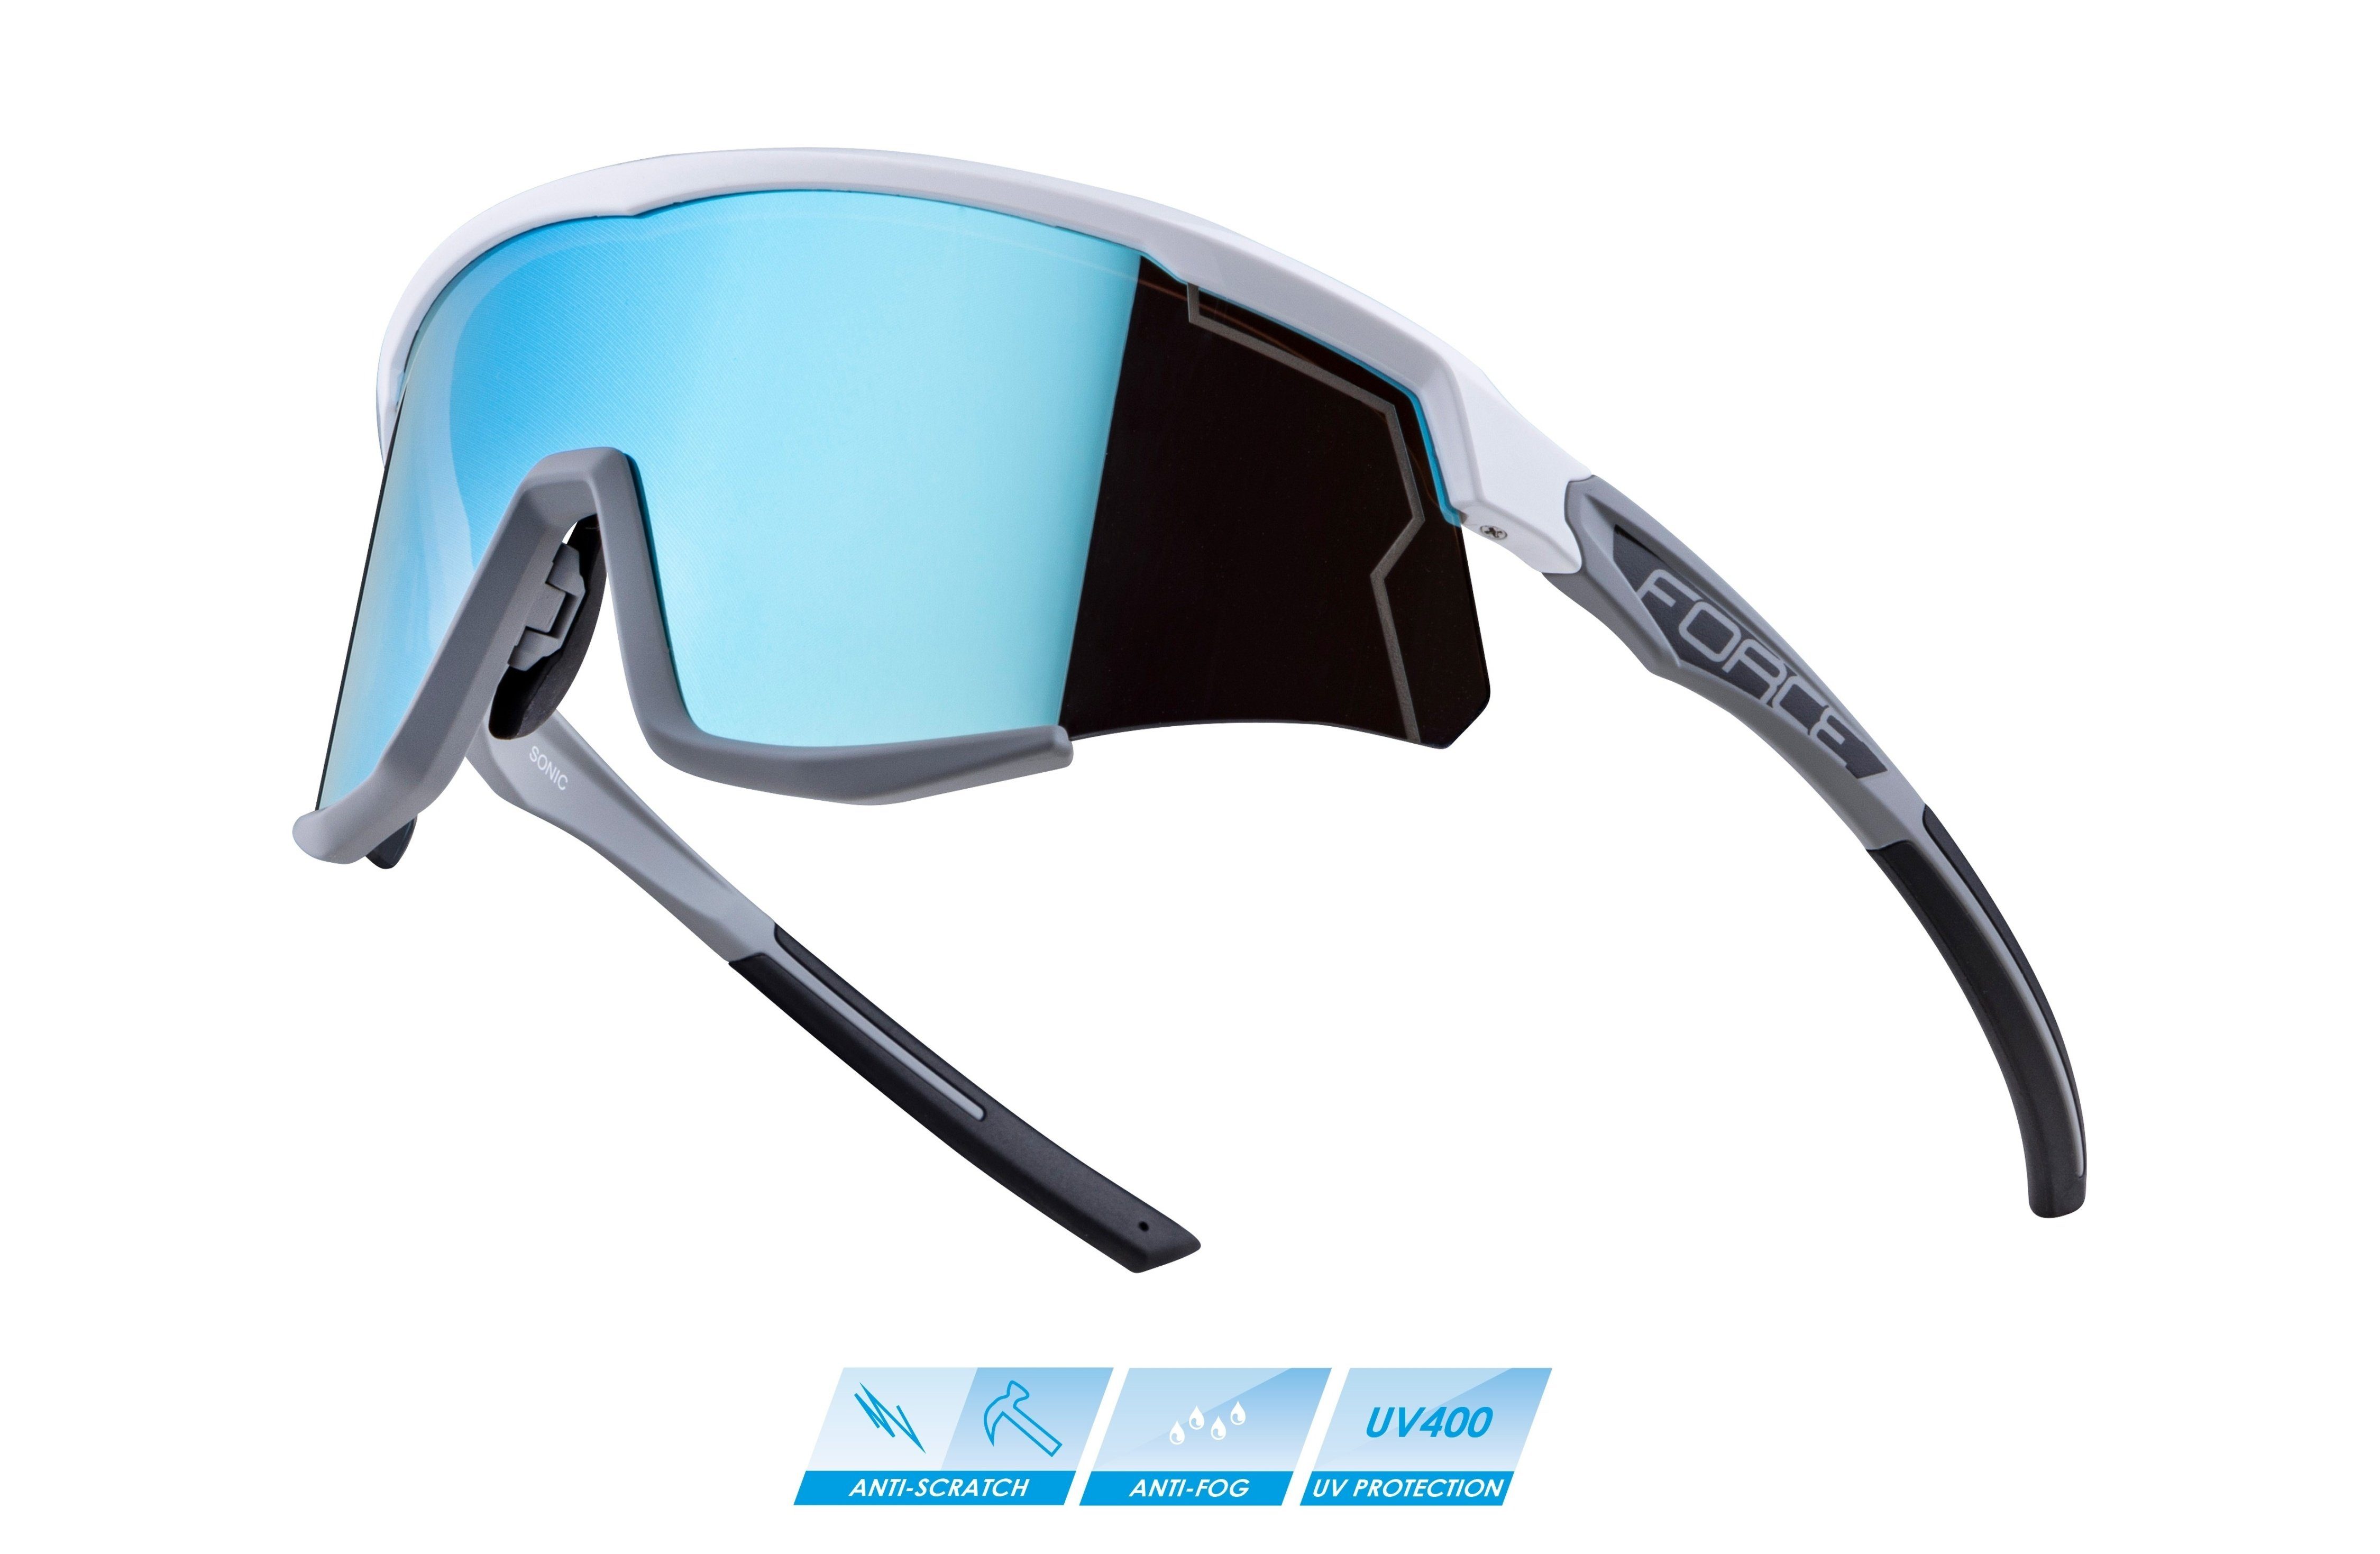 FORCE Fahrradbrille SONIC verspiegelte FORCE Sonnenbrille Scheibe weiß-grau blau